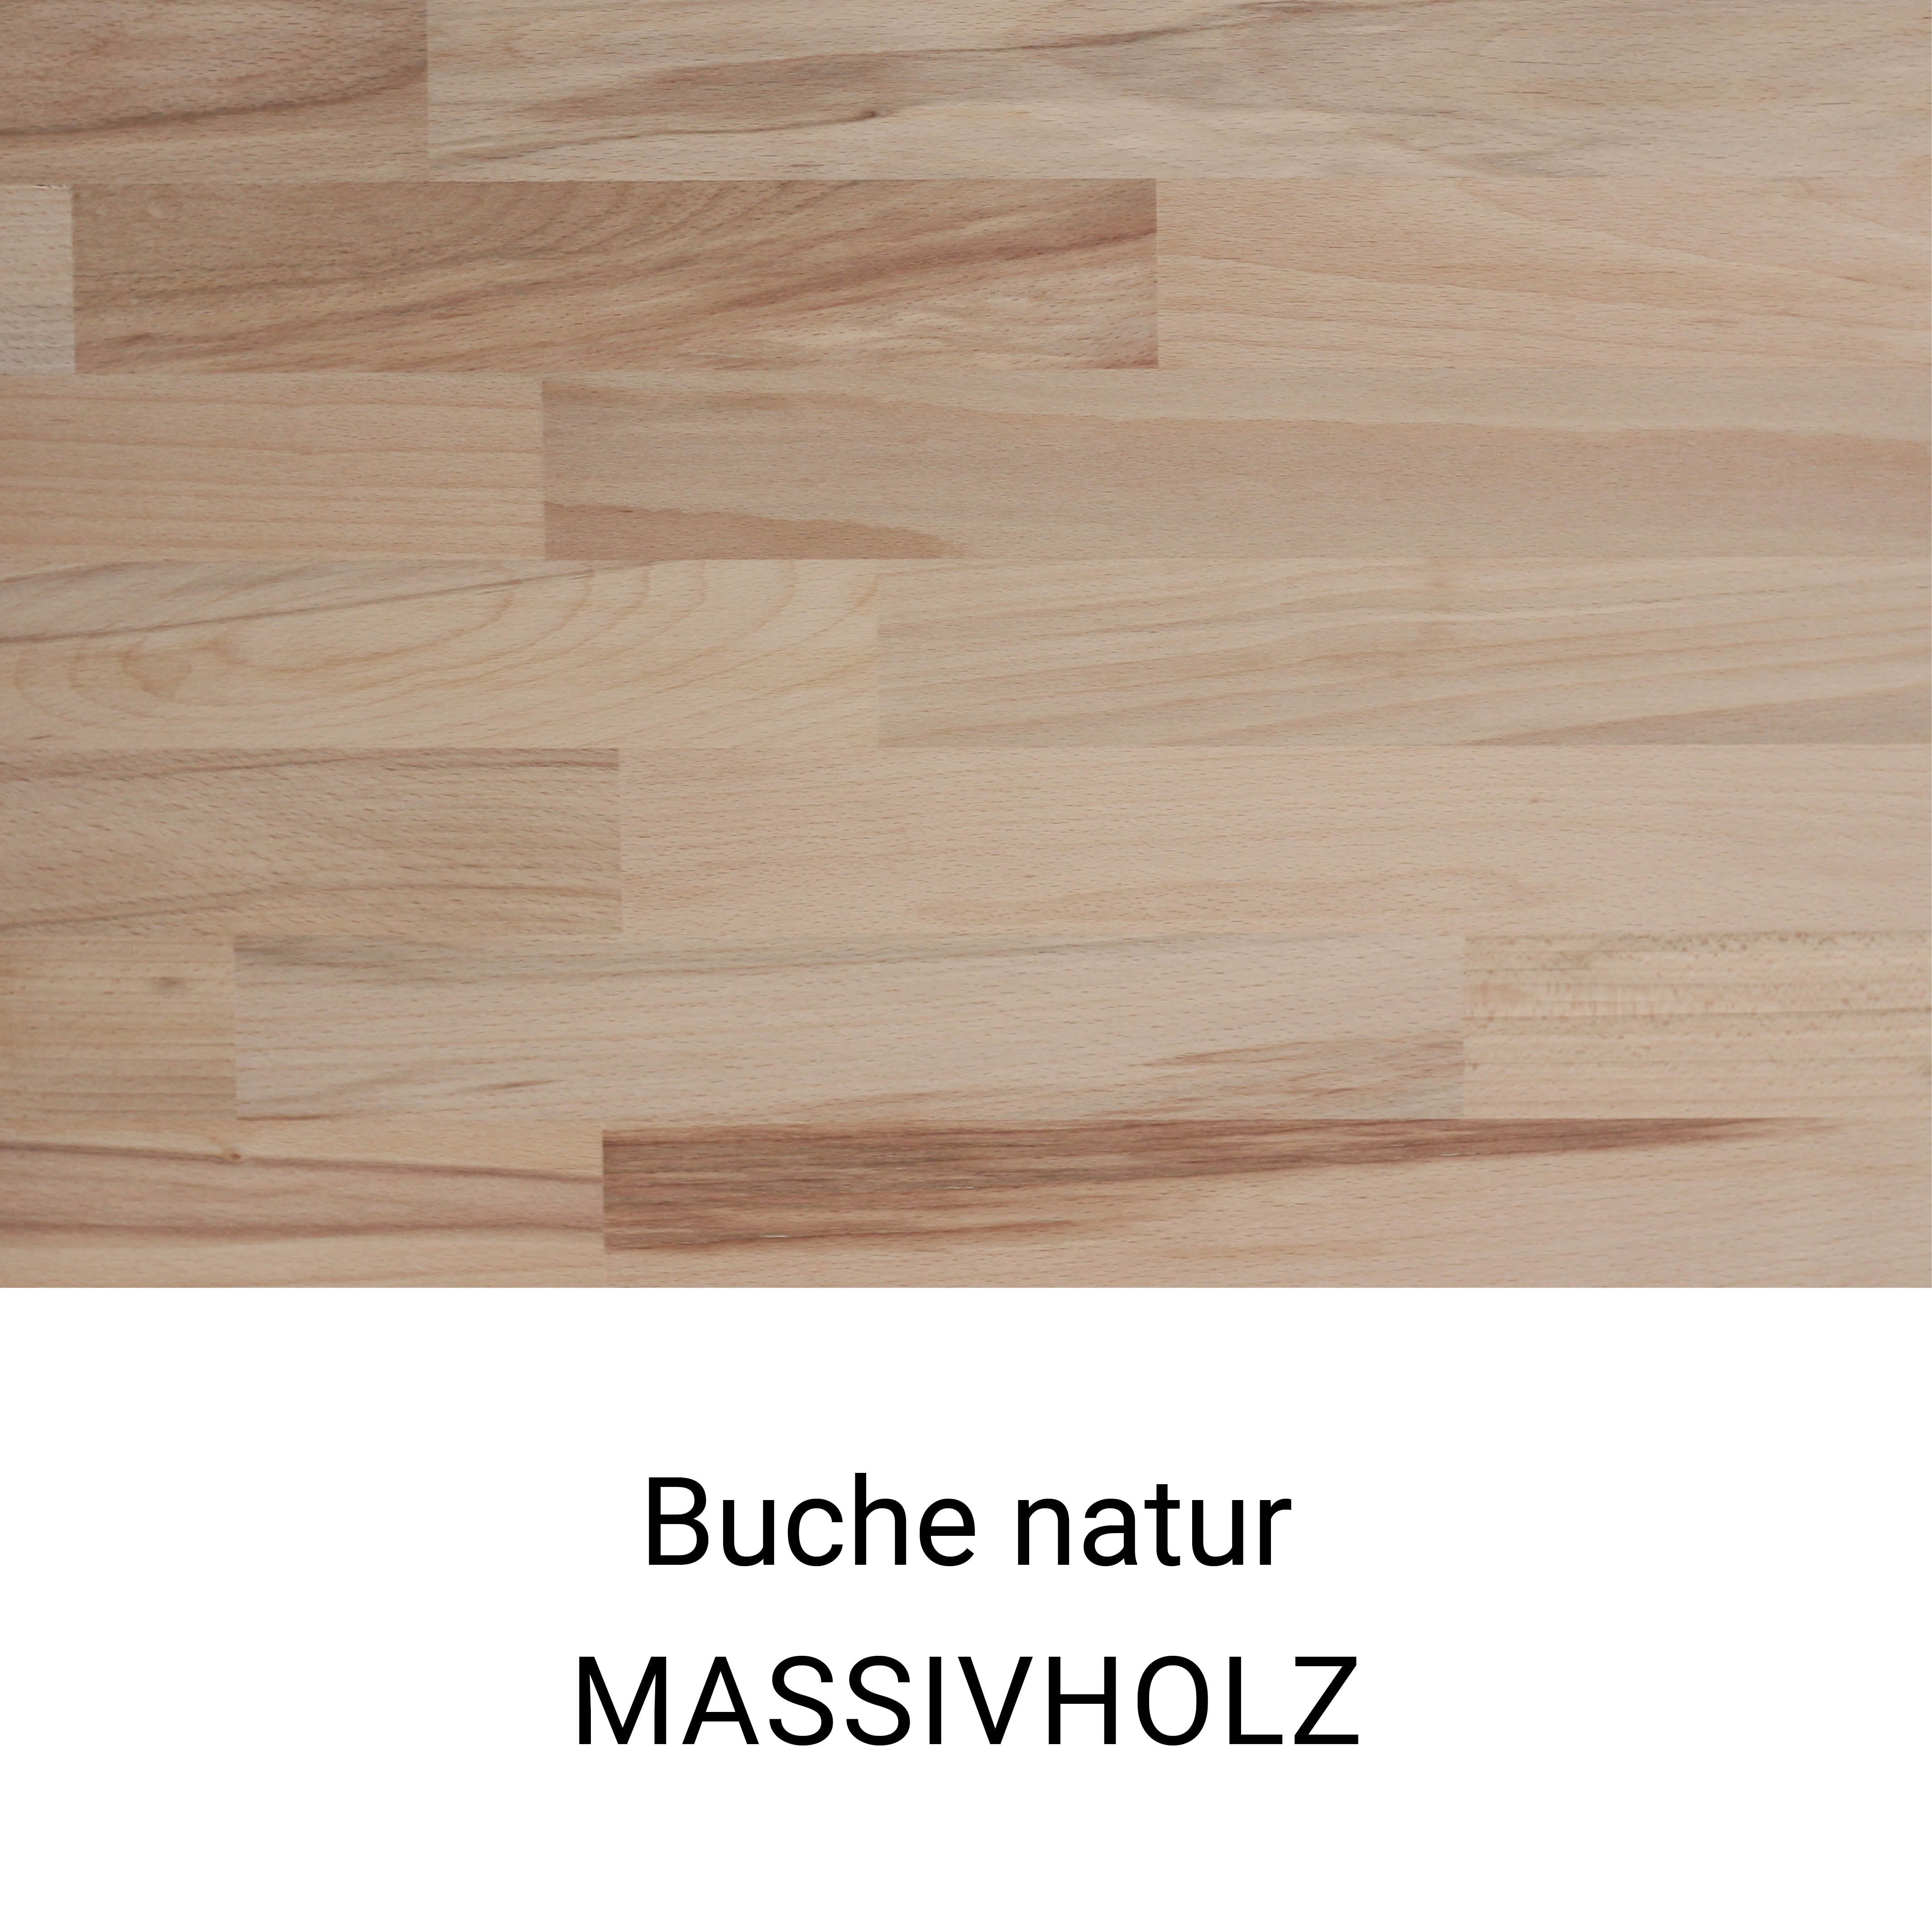 Muster einer Holzoberfläche aus unbehandeltem Buchenholz